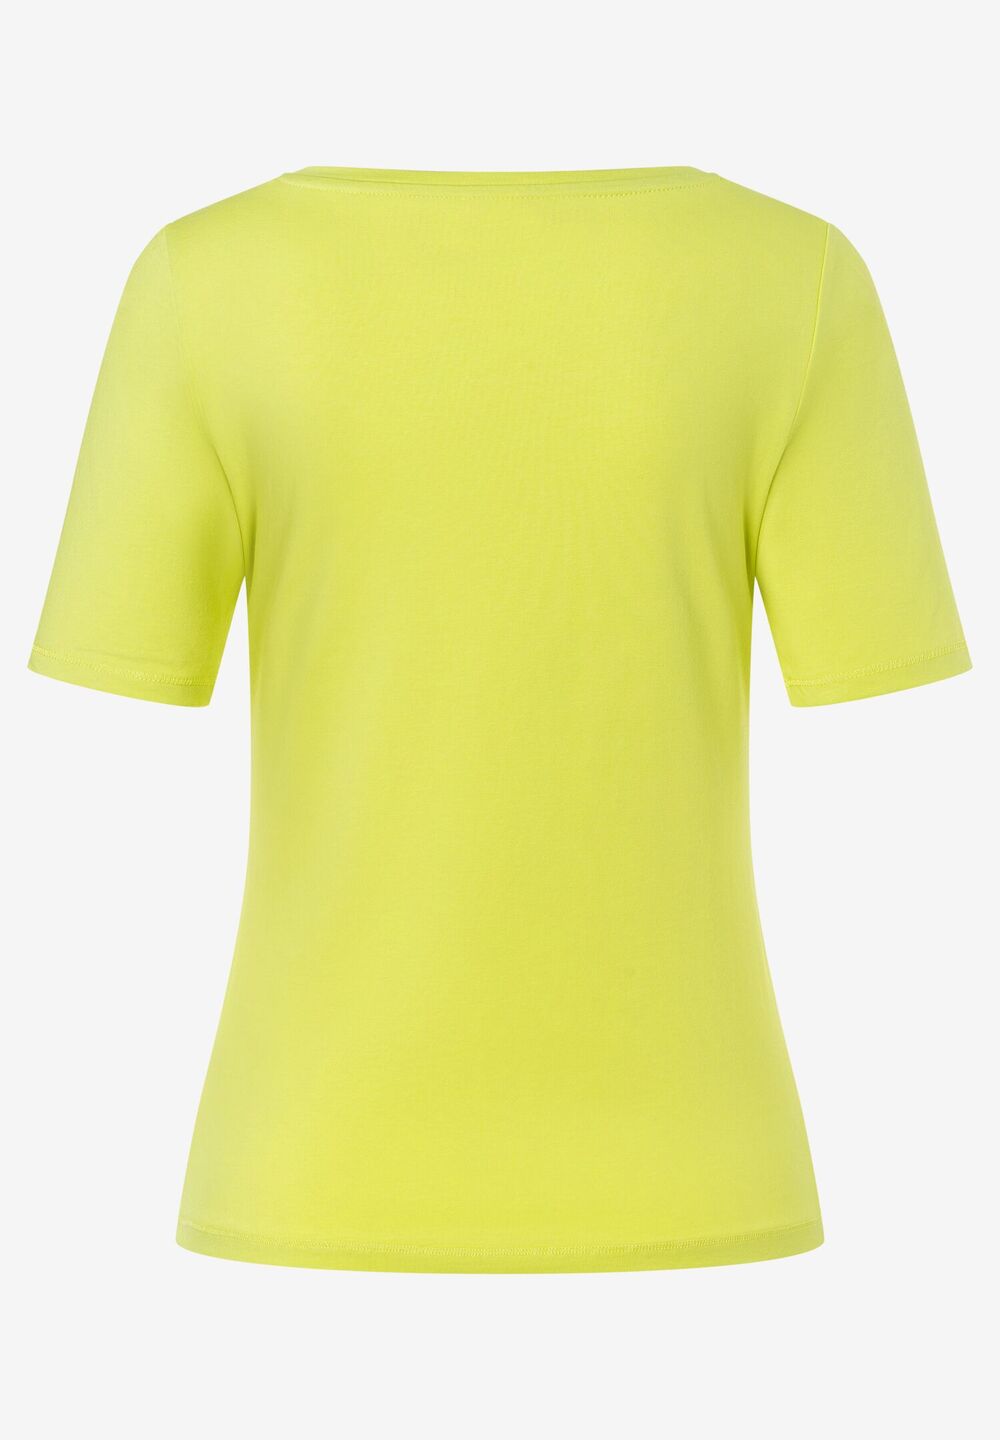 T-Shirt, U-Boot Ausschnitt, lime green, Sommer-Kollektion, gelb Detailansicht 1